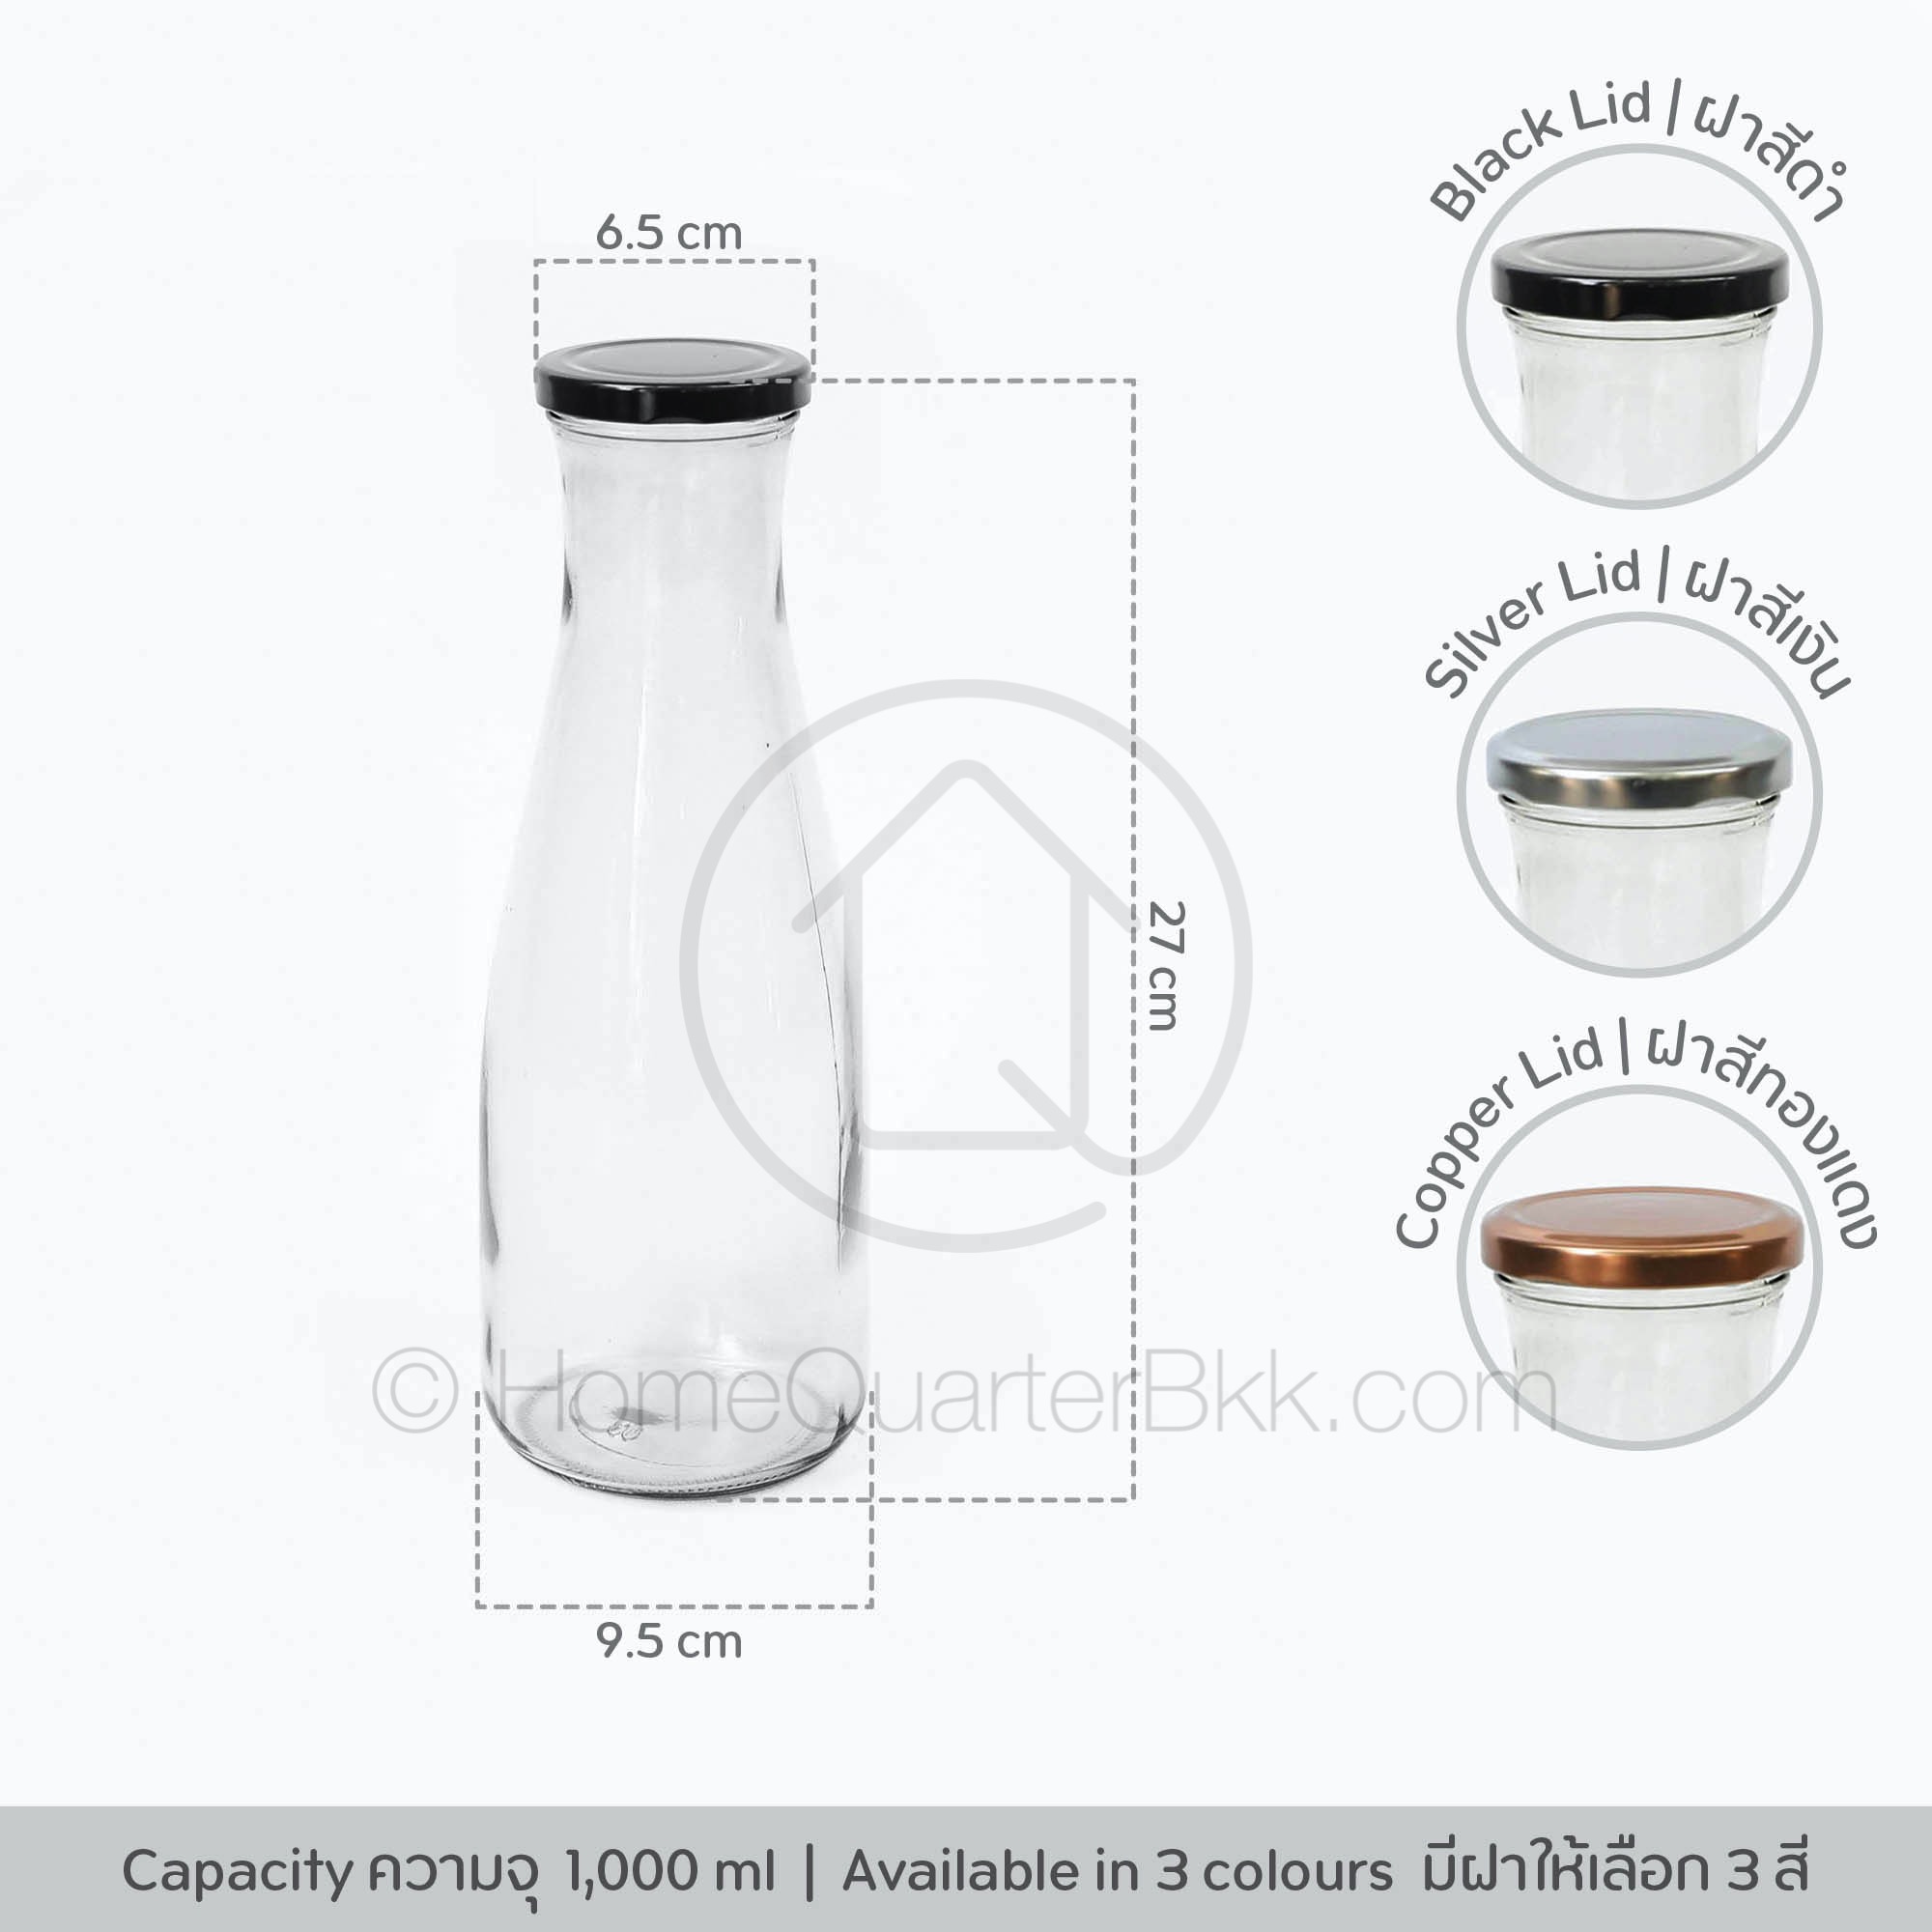 Homequarterbkk-Drinking Bottle with Silver/Copper/Black Lid 1000 ml ขวด แก้ว น้ำ เครื่องดื่ม แจกัน ที่ใส่ ดอกไม้ น้ำผลไม้ ฝาโลหะ ฝามี 3 สีให้เลือก สีเงิน/ สีดำ/สีทองแดง สี Silver Lid สี Silver Lid